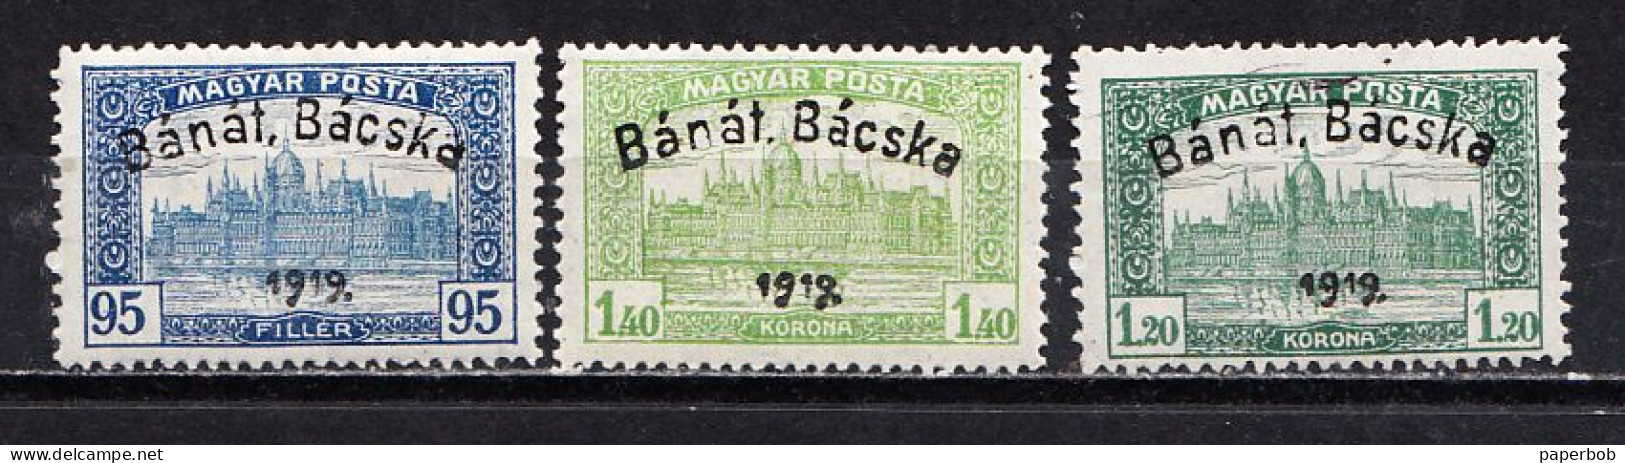 BANAT BACSKA , MNH - Banat-Bacska